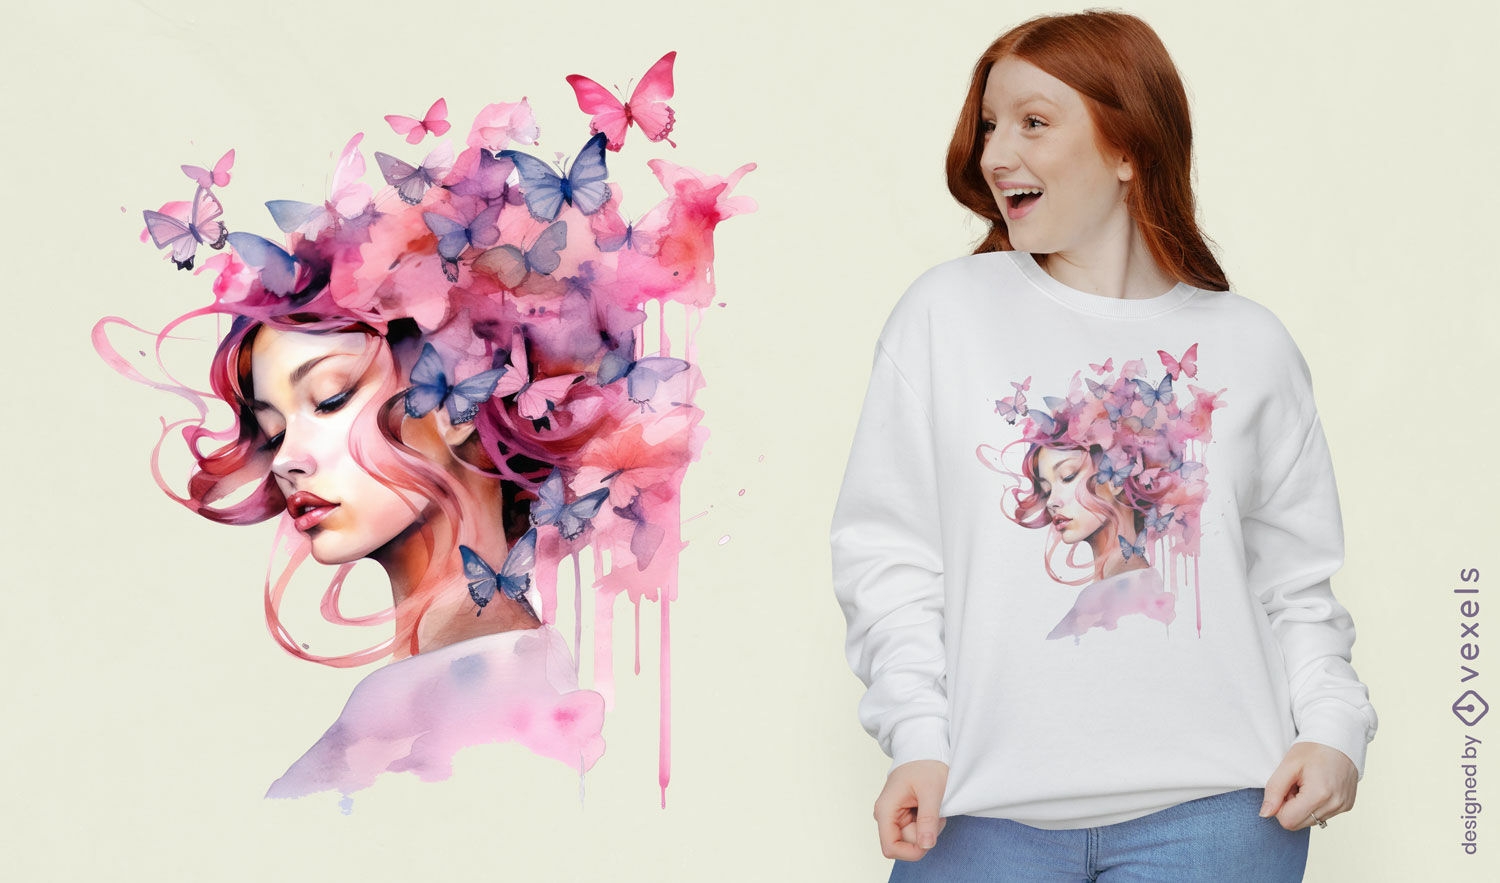 Diseño de camiseta mujer con mariposas